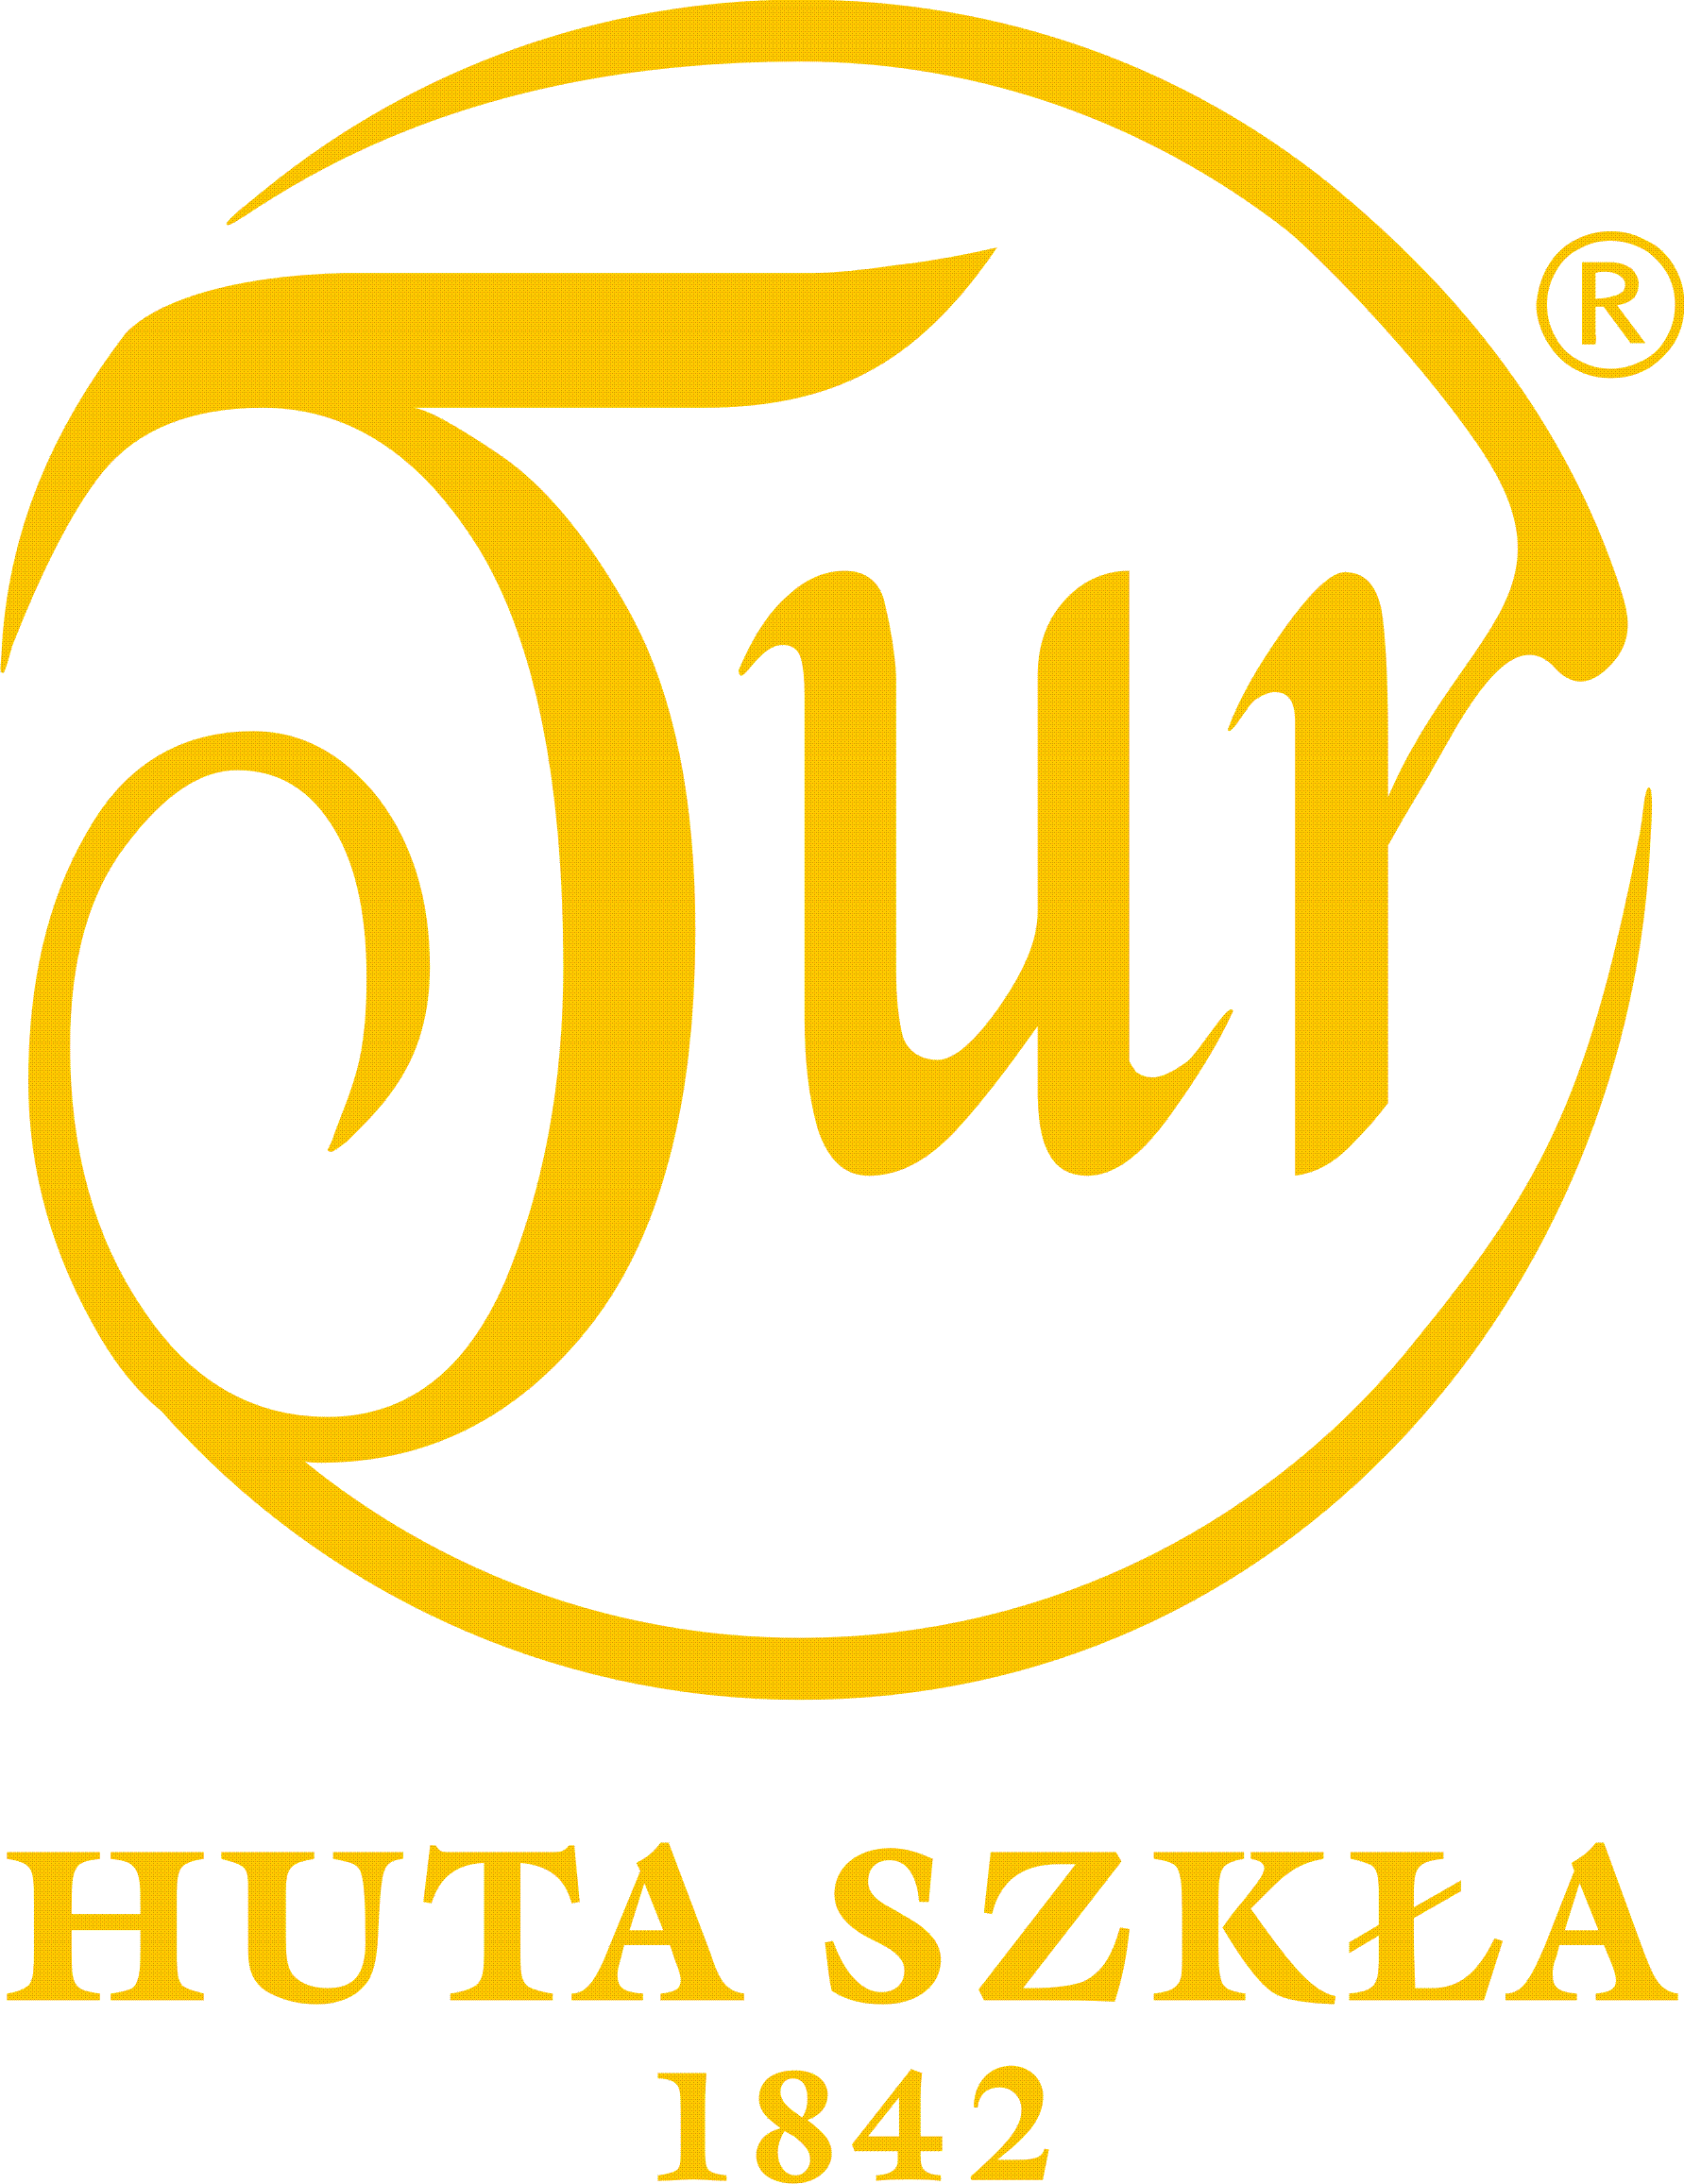 Huta Szka Tur